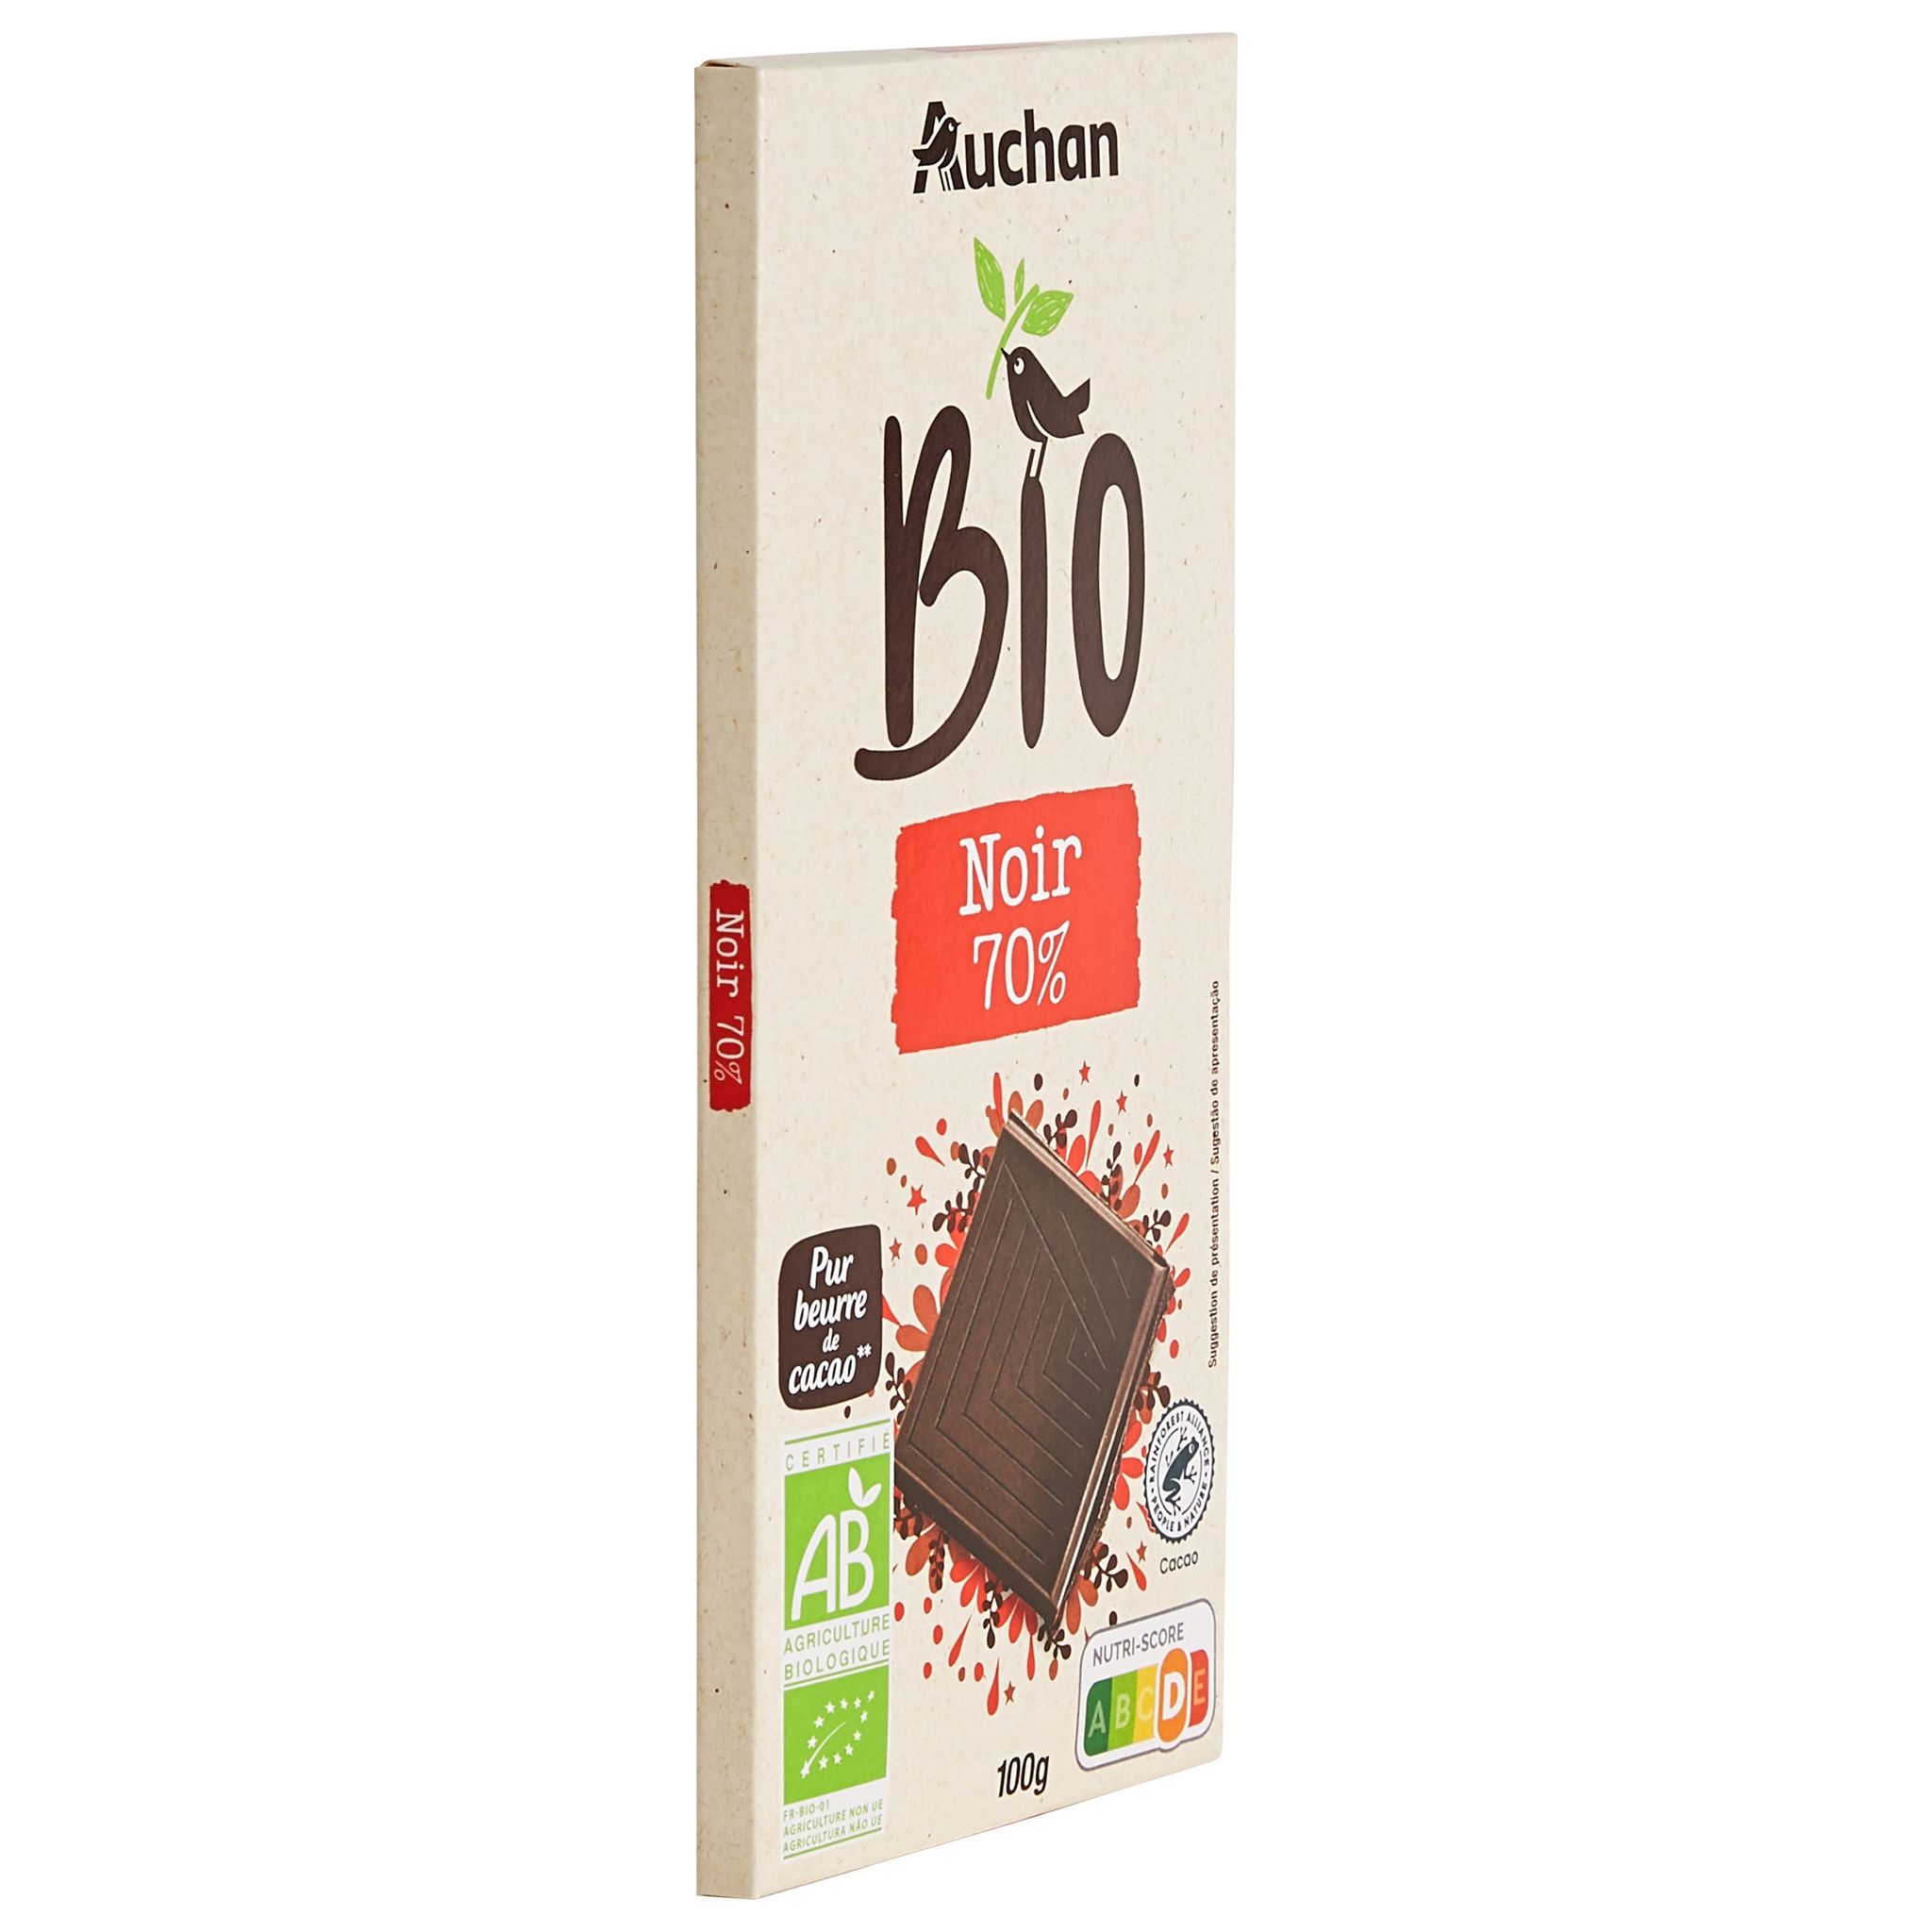 AUCHAN BIO Tablette de chocolat noir 70% 1 pièce 100g pas cher